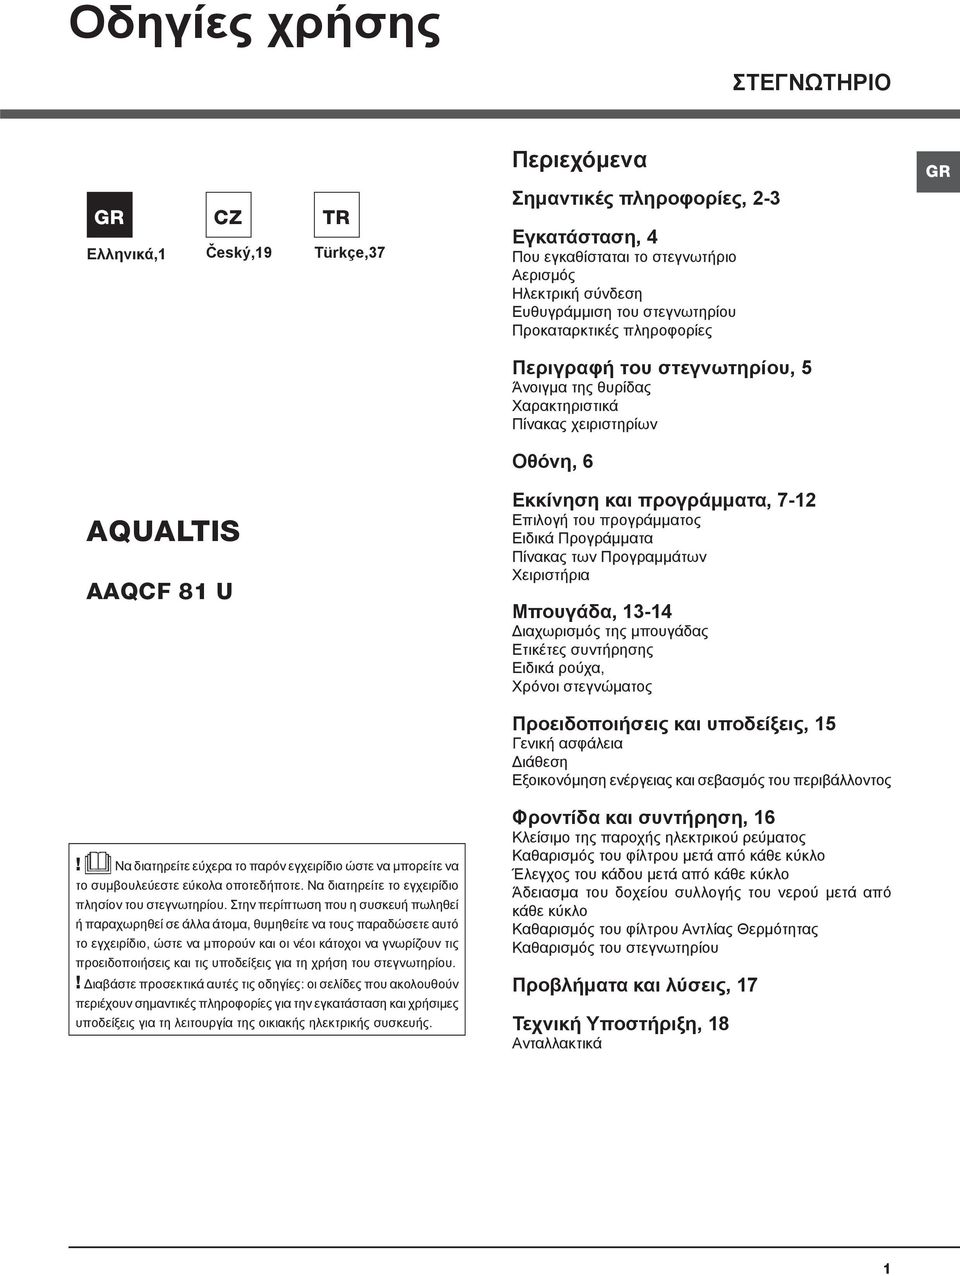 Οδηγίες χρήσης AQUALTIS ΣΤΕΓΝΩΤΗΡΙΟ. Περιεχόμενα AAQCF 81 U. Σημαντικές  πληροφορίες, PDF Free Download